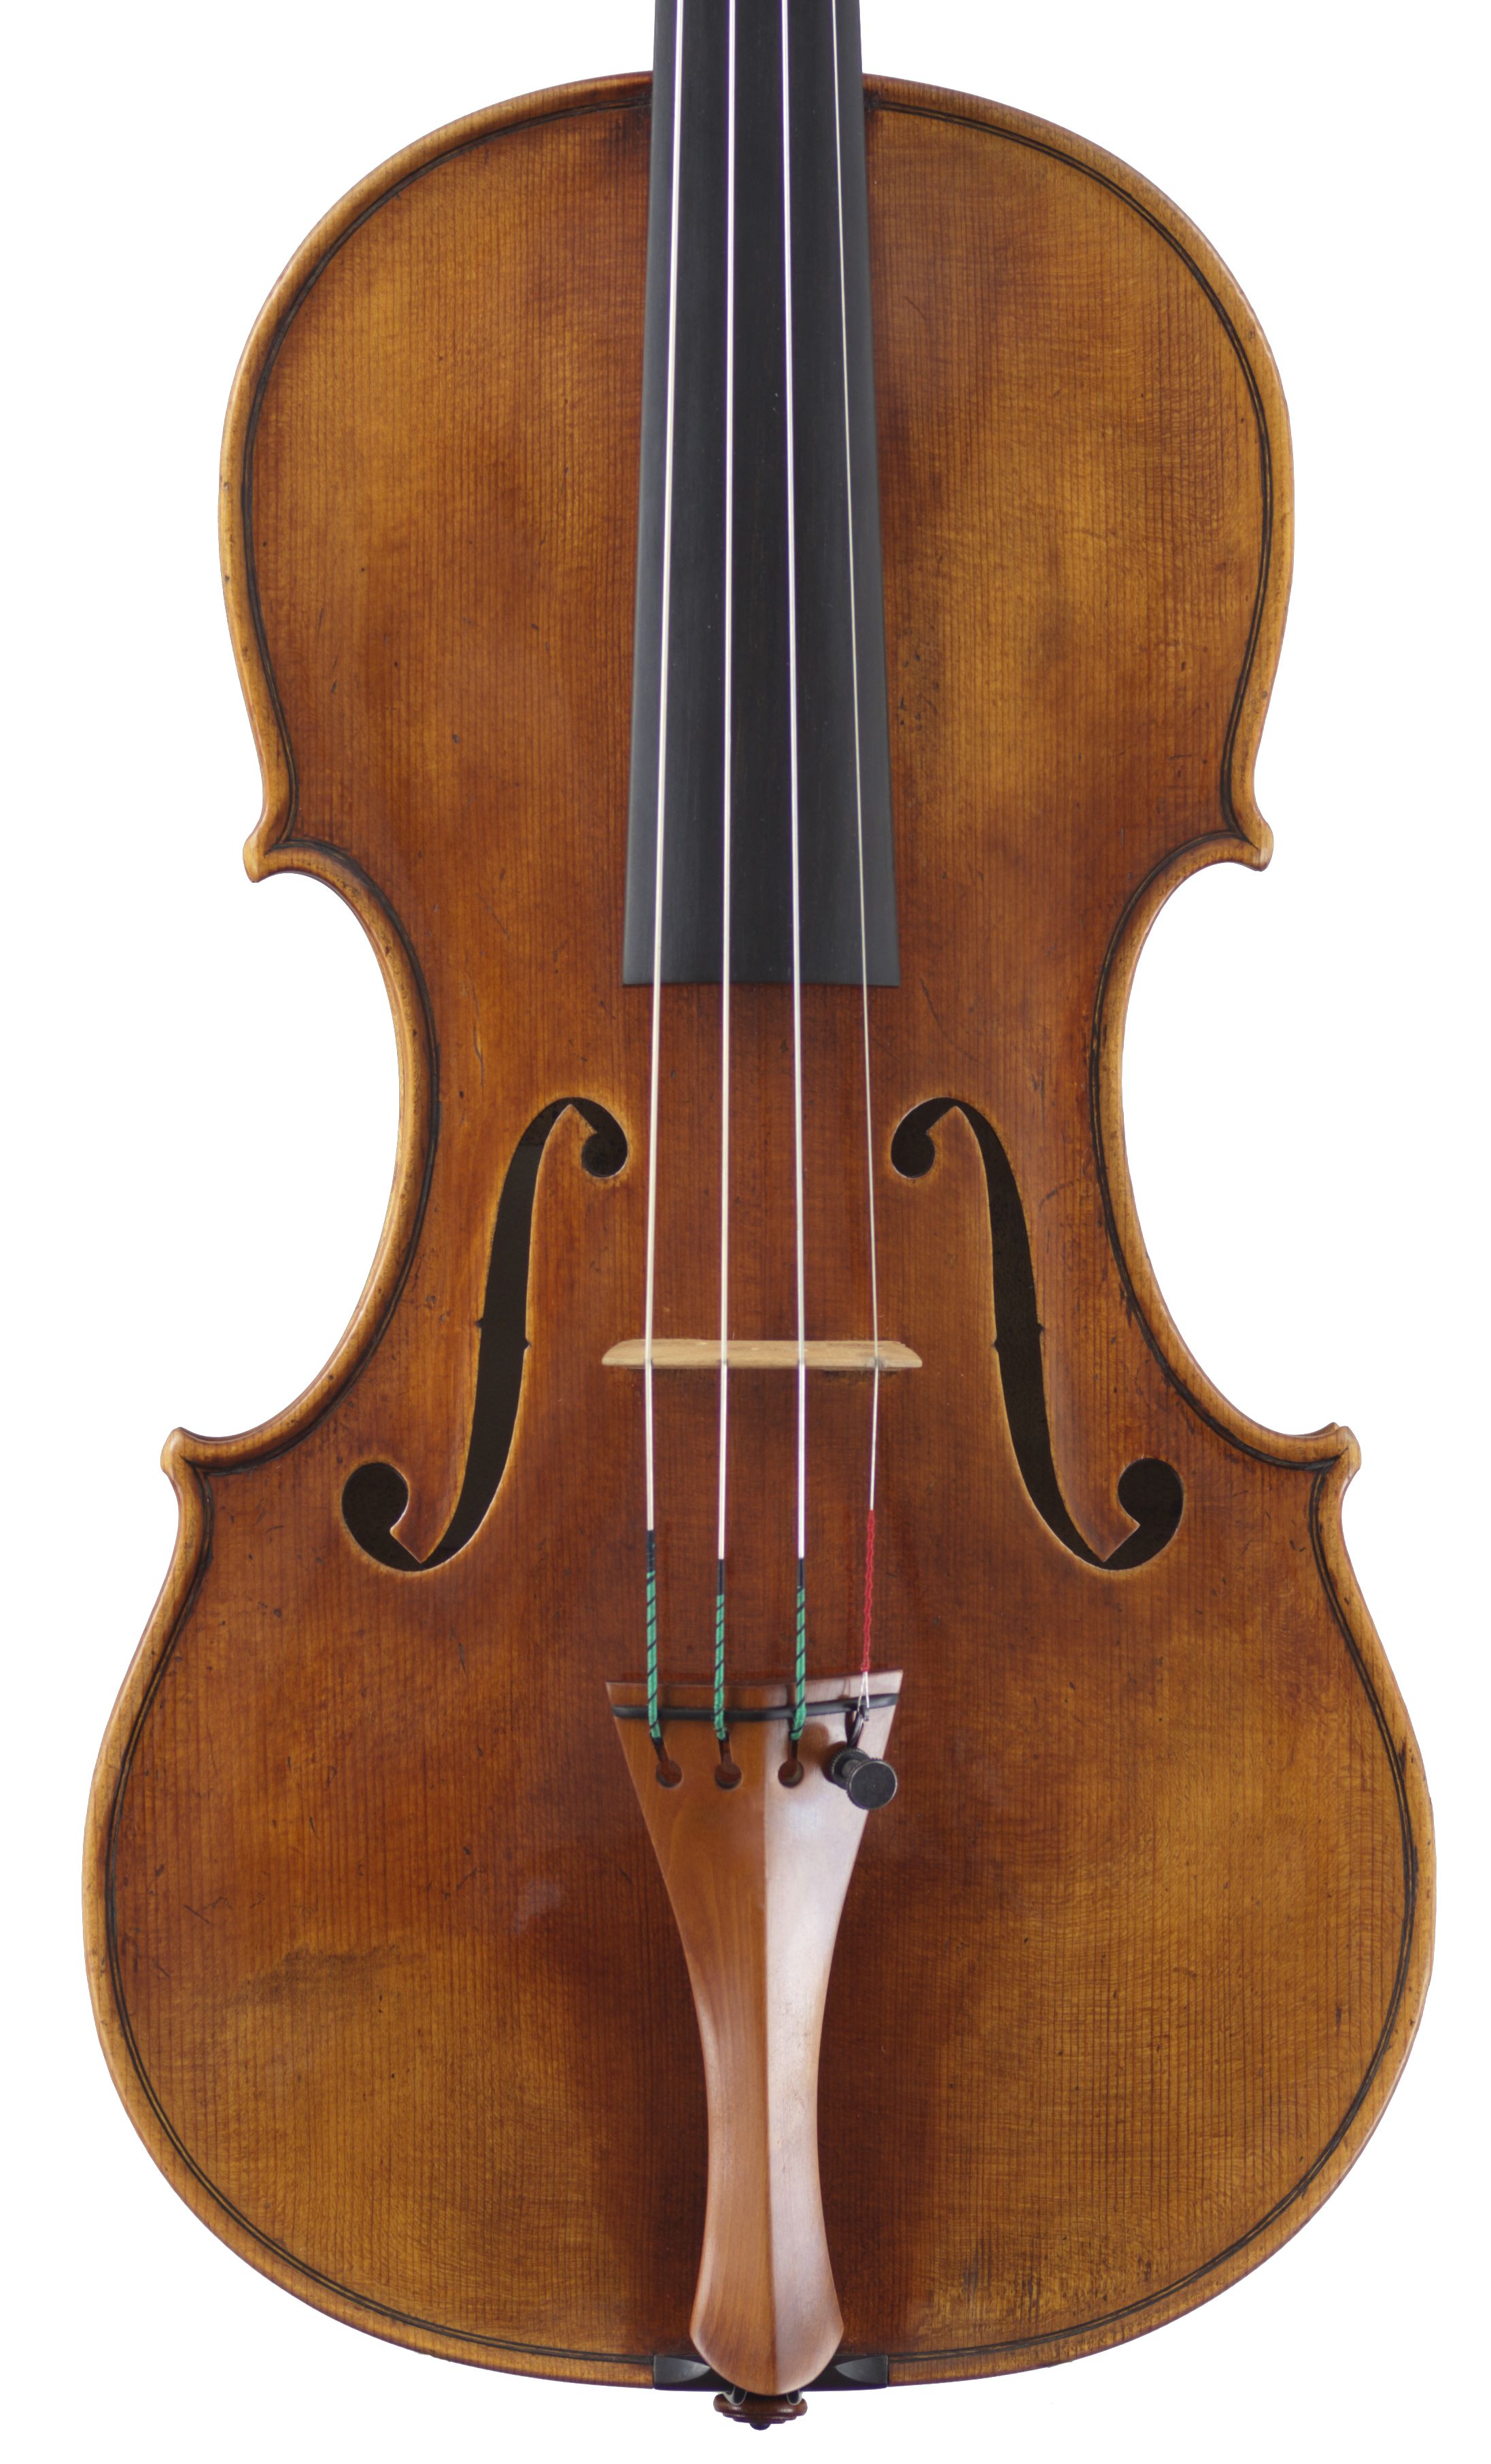 Paul Crowley DG violin top 2014.jpg